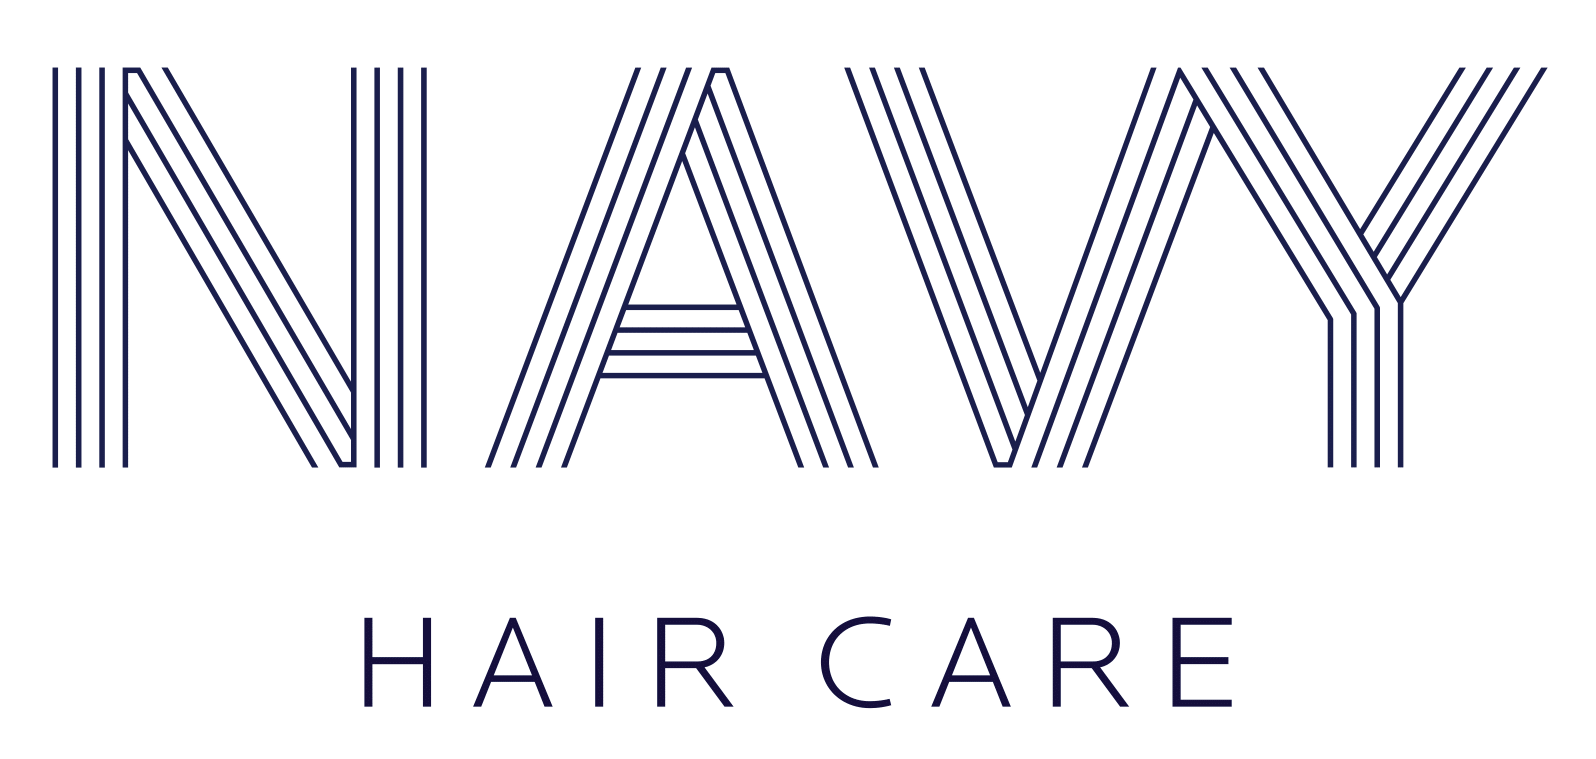 Navy Haircare